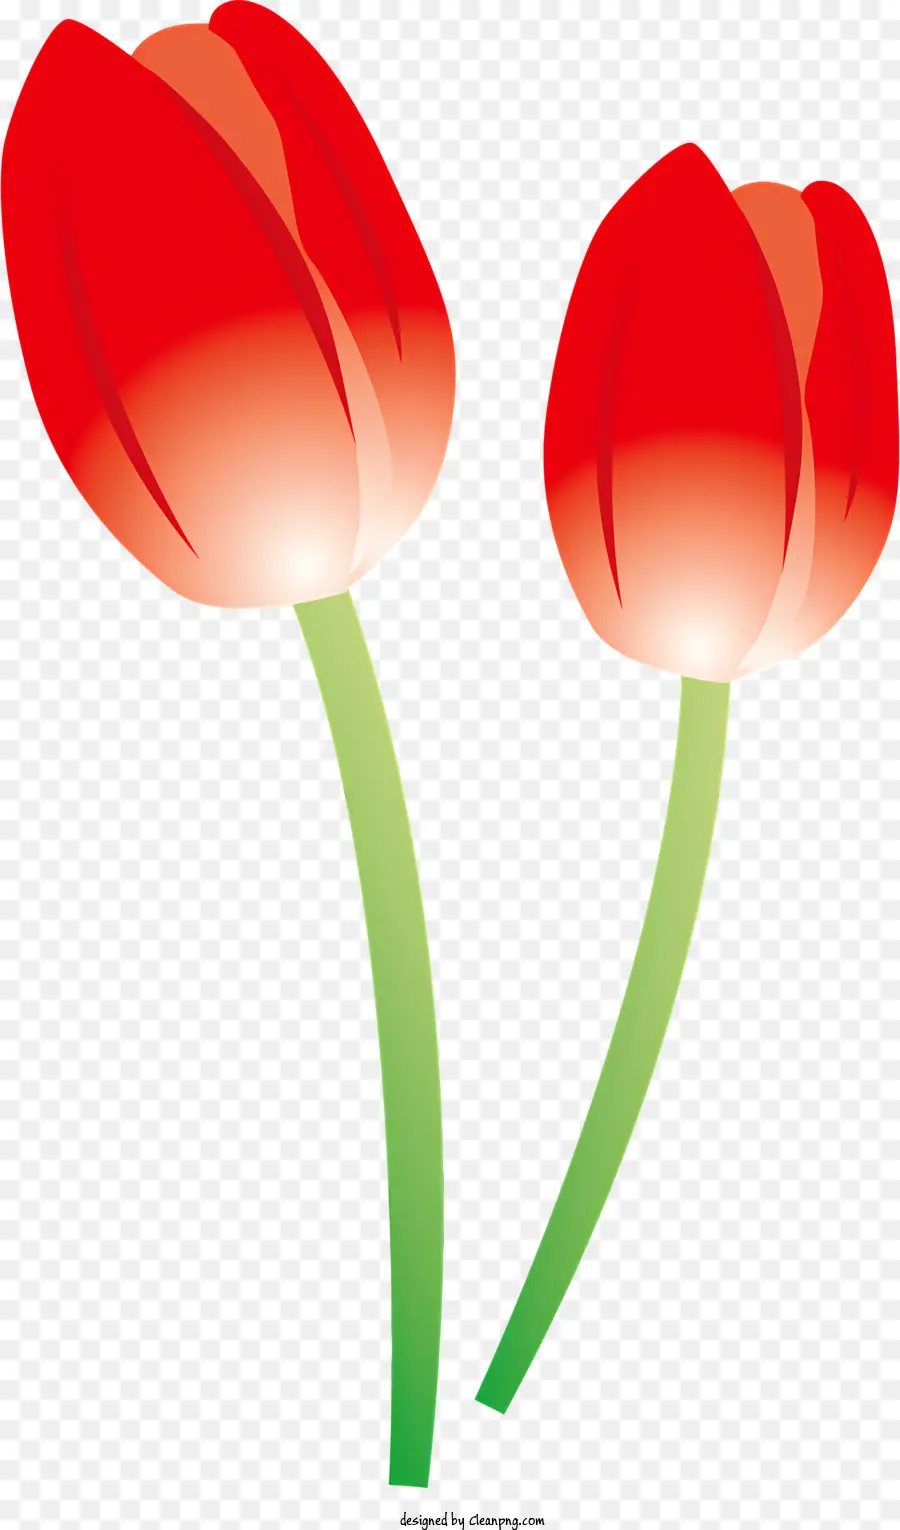 Icona Tulips rossi foglie verdi foglie singoli disposizione simmetrica - Due tulipani rossi con foglie verdi